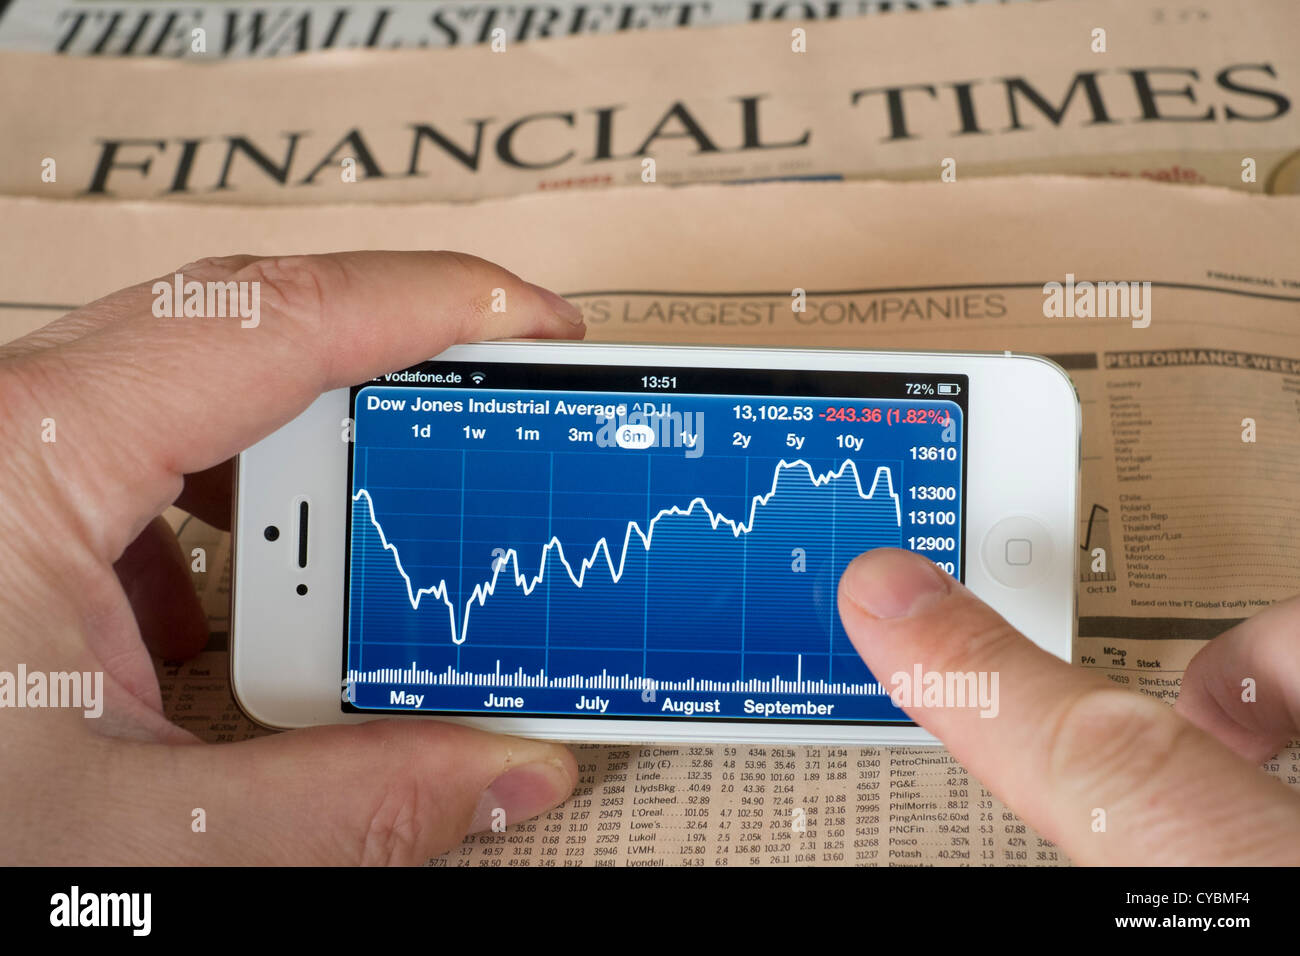 Détail de l'iPhone 5 smart phone app financière montrant l'écran avec les données boursières Banque D'Images